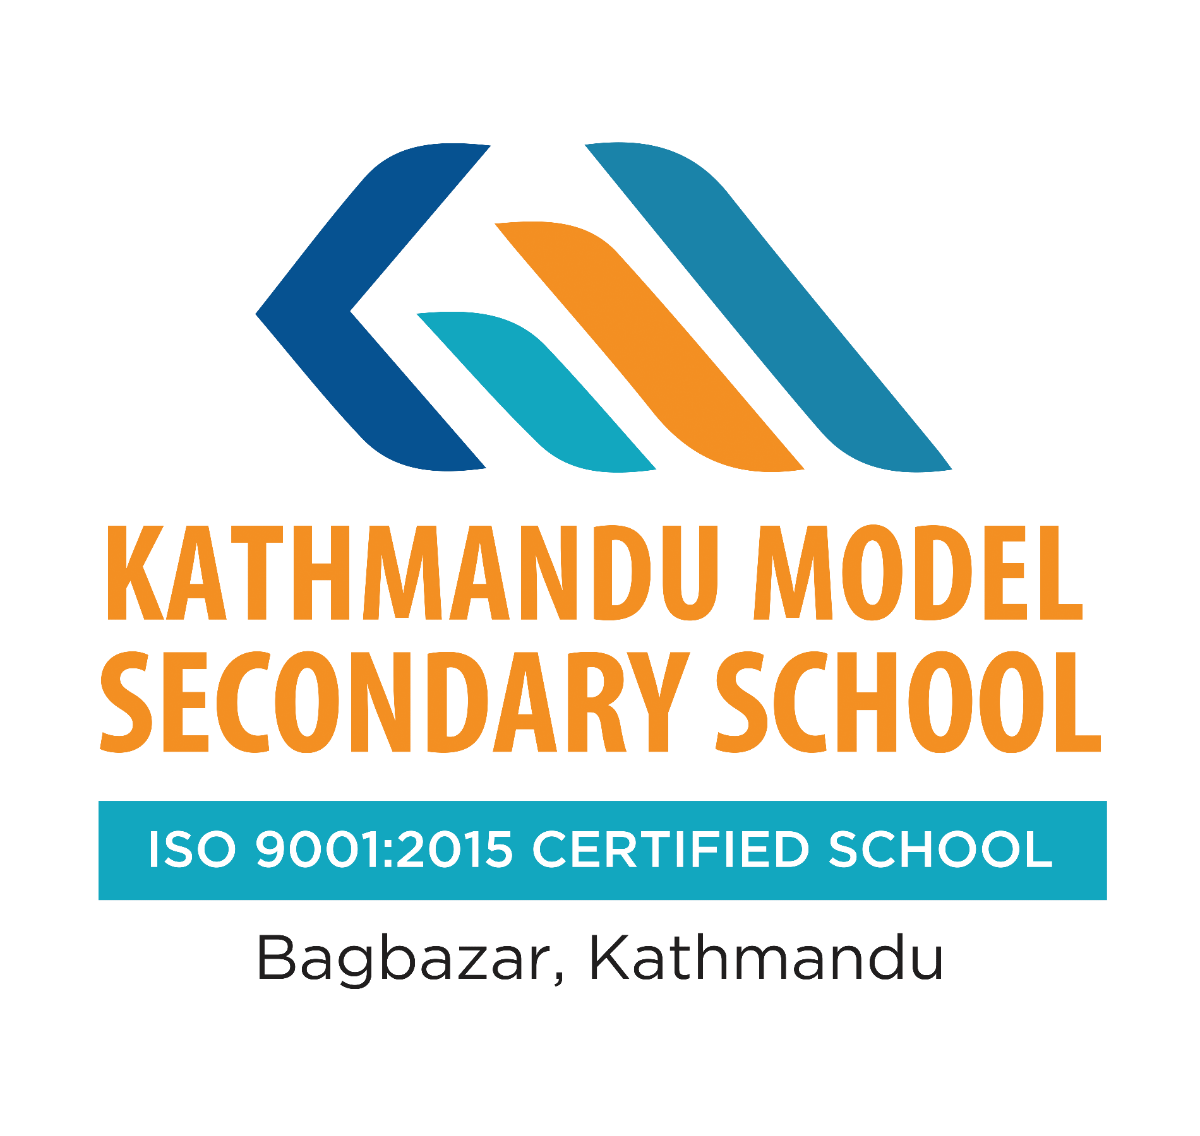 KATHMANDU MODEL SECONDARY SCHOOL logo